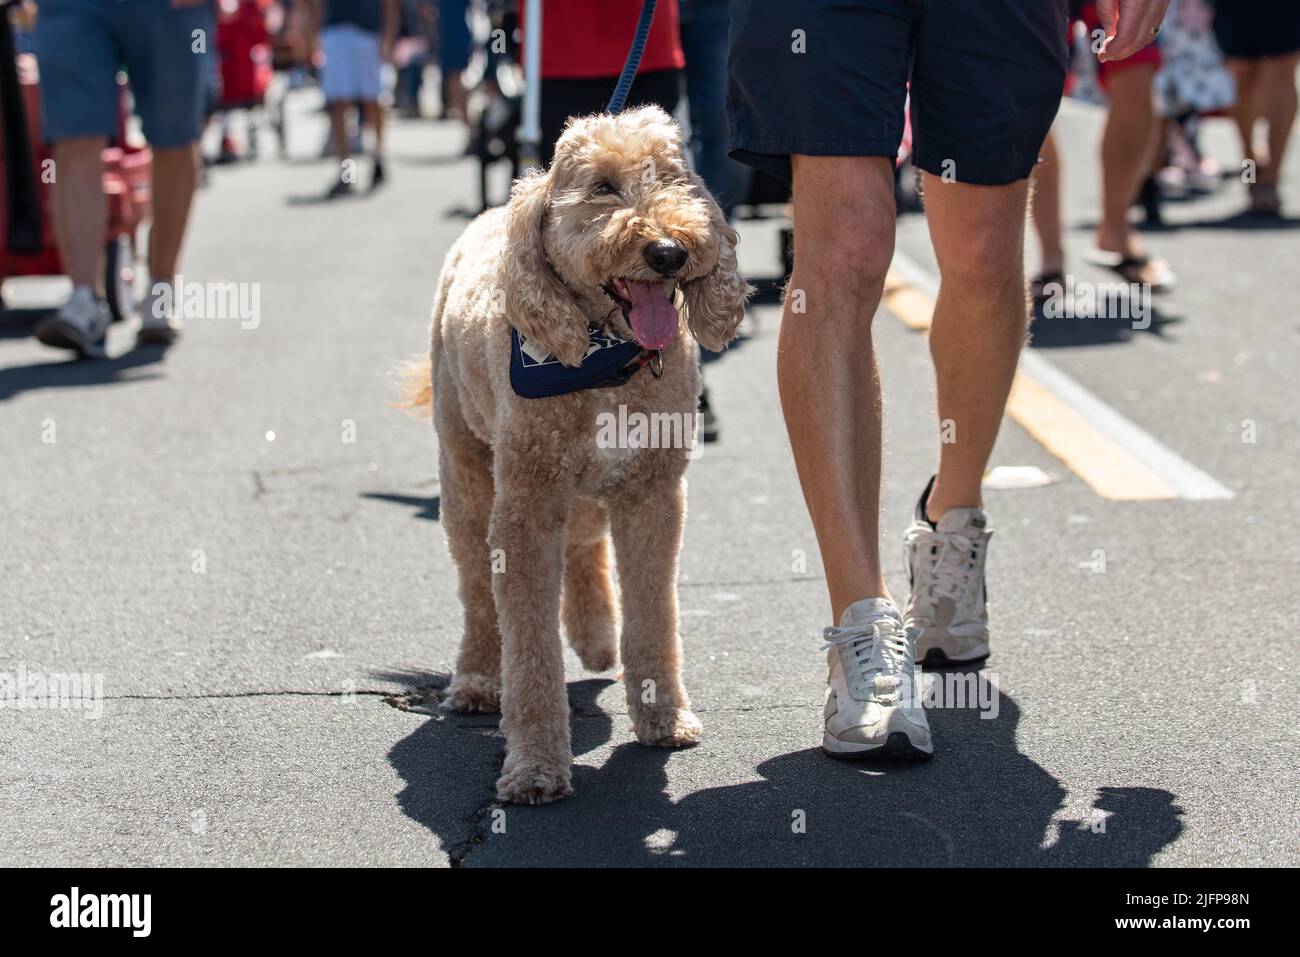 Die Holiday Parade in einer kleinen Stadt ist der perfekte Ort, um mit dem Labradoodle-Hund mitten auf der Straße spazieren zu gehen. Stockfoto